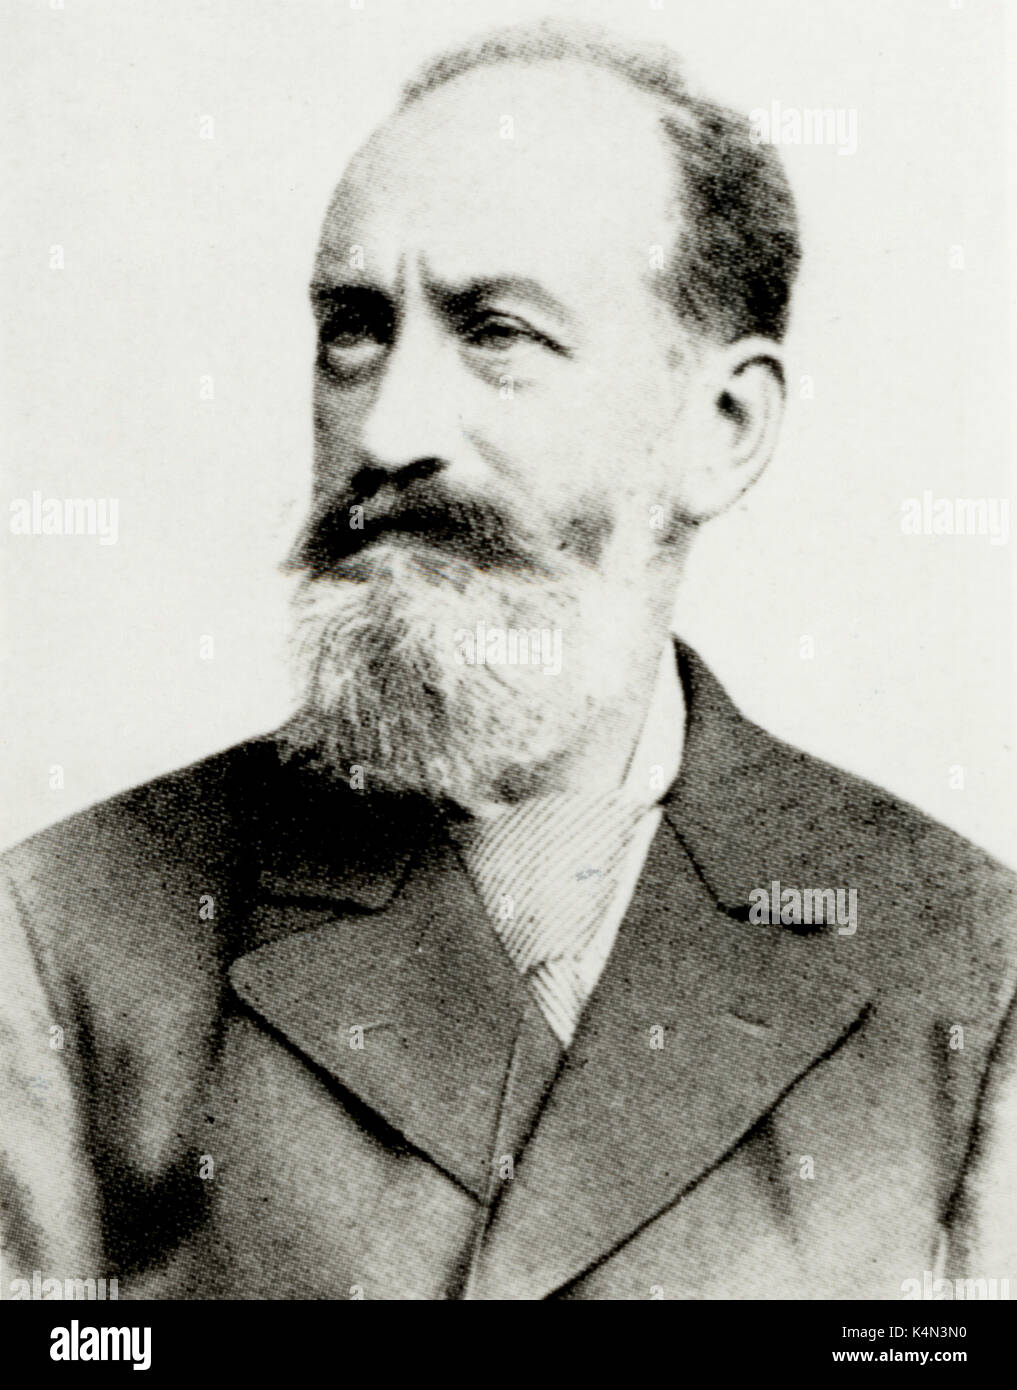 MILLÖCKER, Karl-österreichischen Komponisten von Operetten, 1842-1899. Komponist von "Der Bettelstudent (1882) Stockfoto